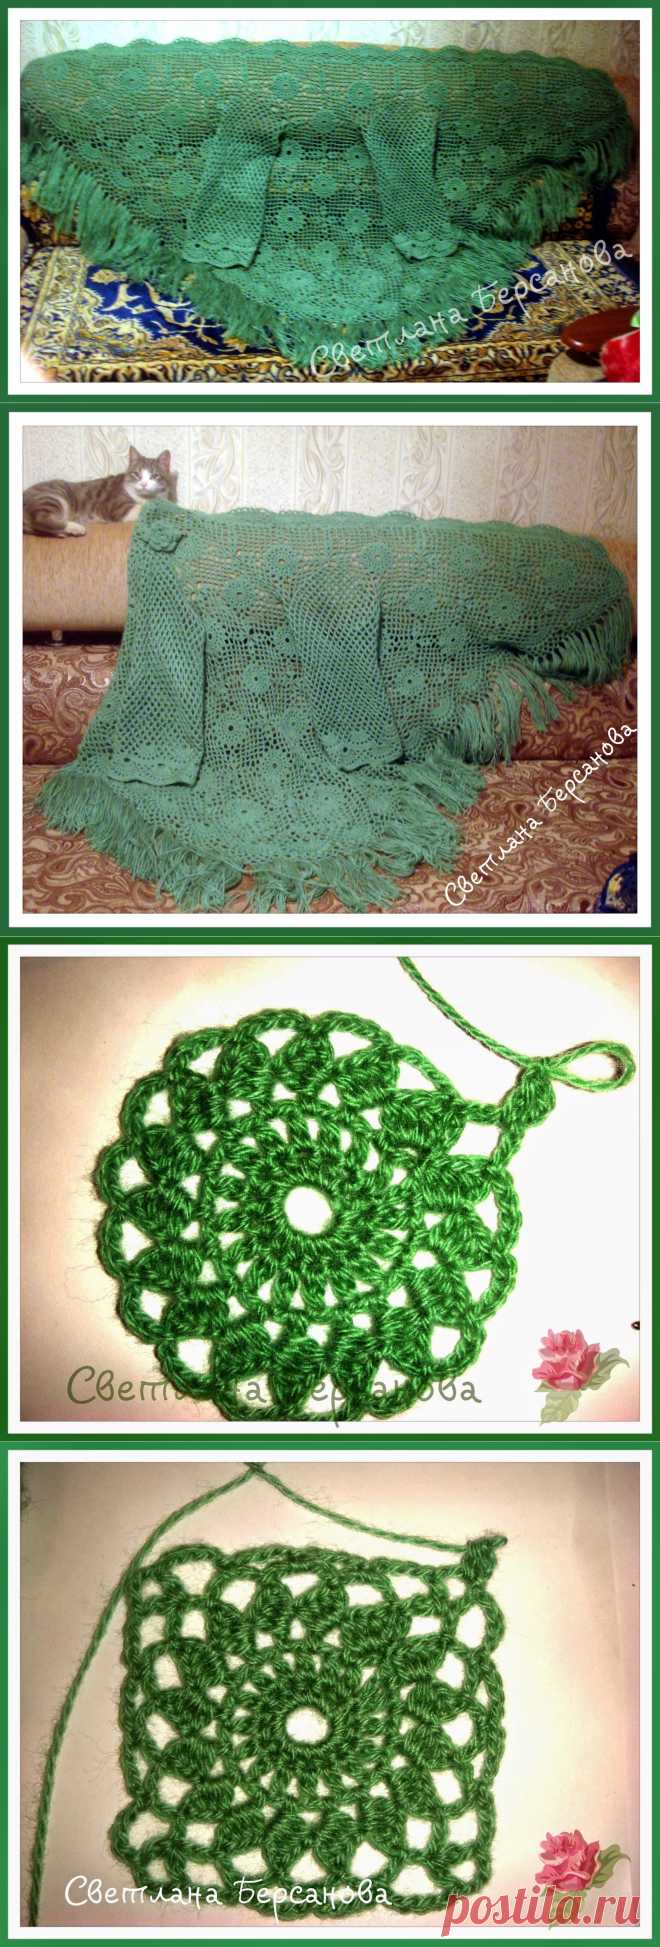 Вязание крючком и спицами/Crochet and knitting: Идея для вязания - шаль-жакет. Мастер-класс